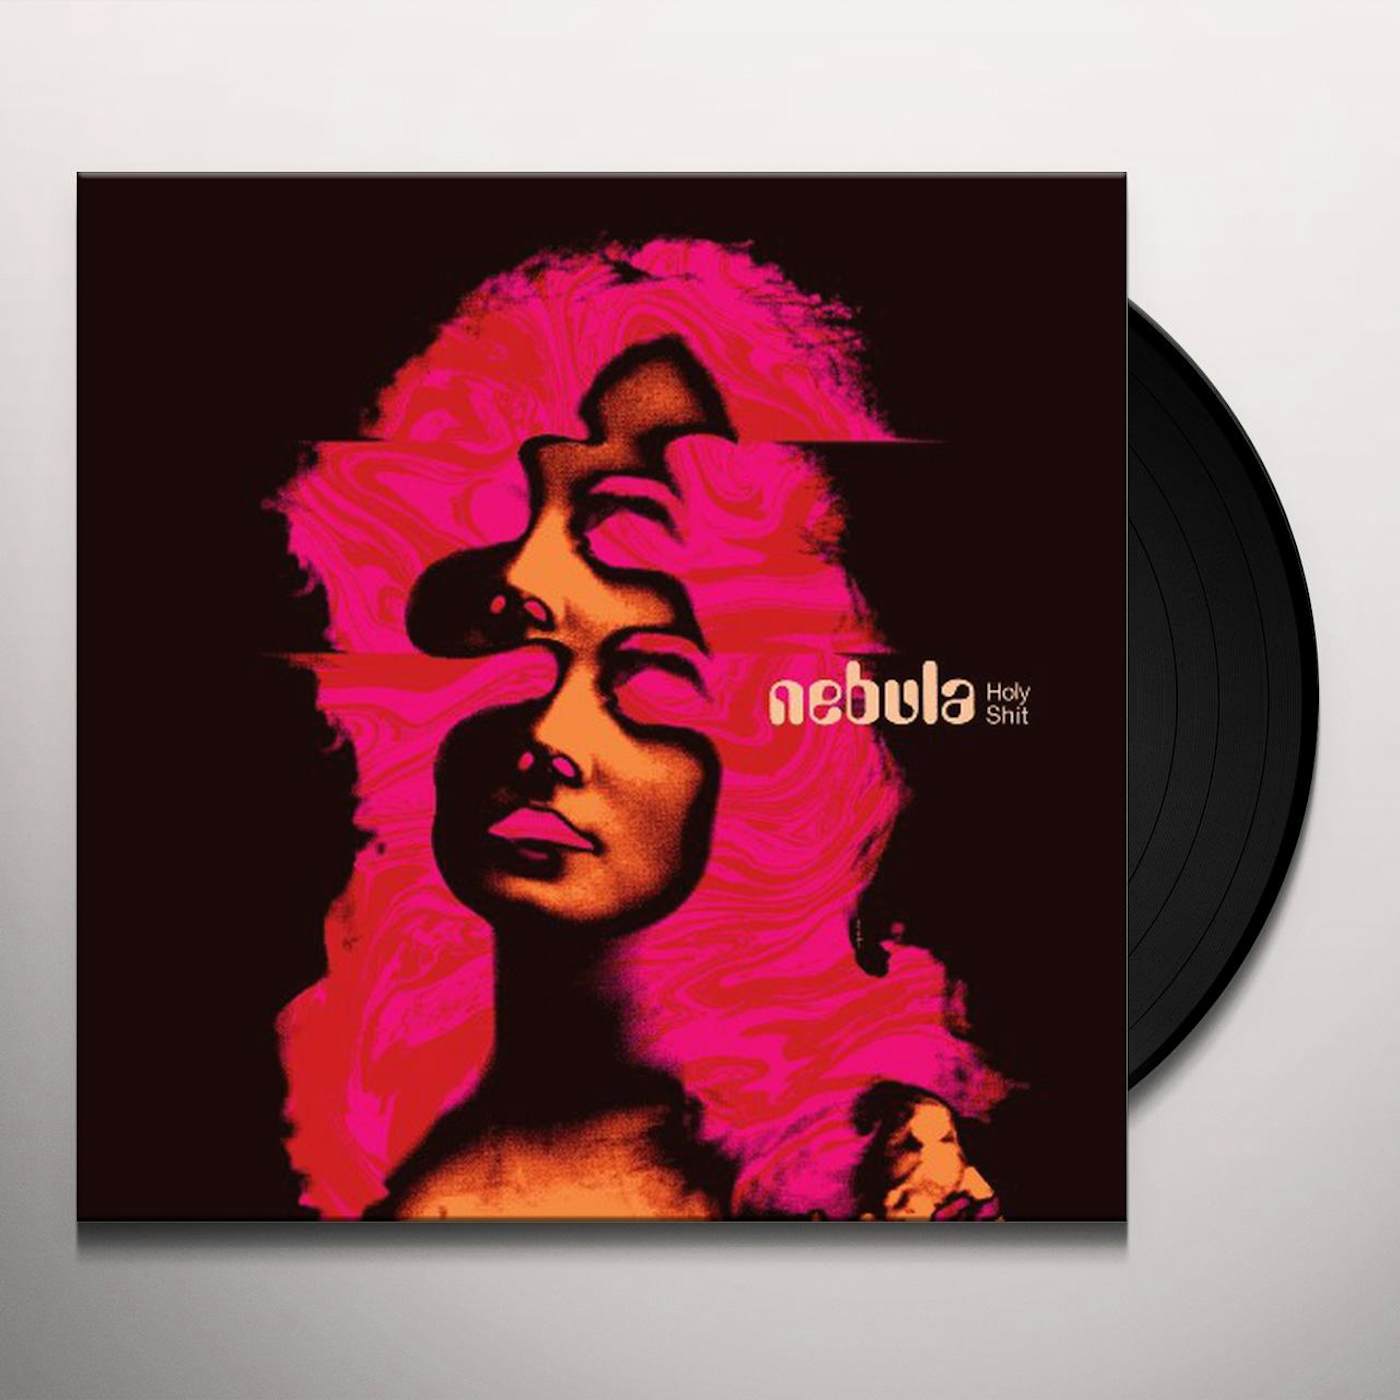 Nebula Holy Shit Vinyl Record